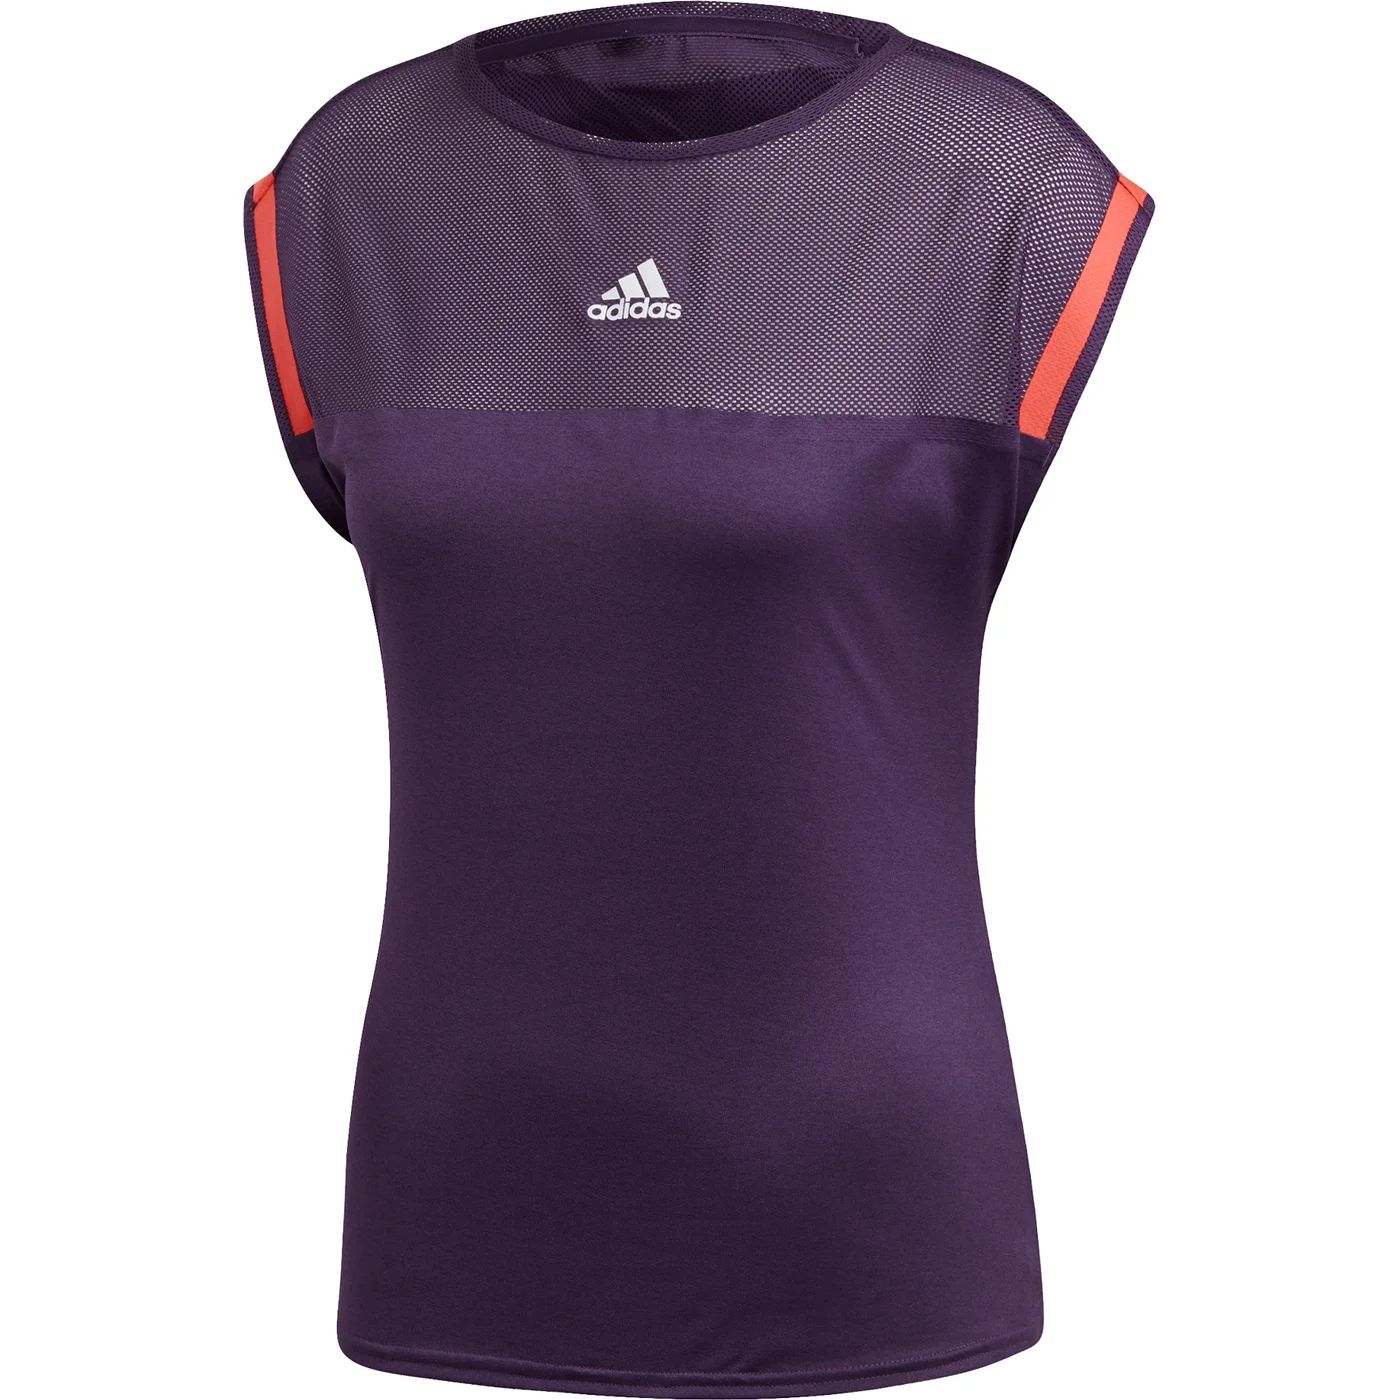 Футболка женская Adidas, DP0263, фиолетовая, XS